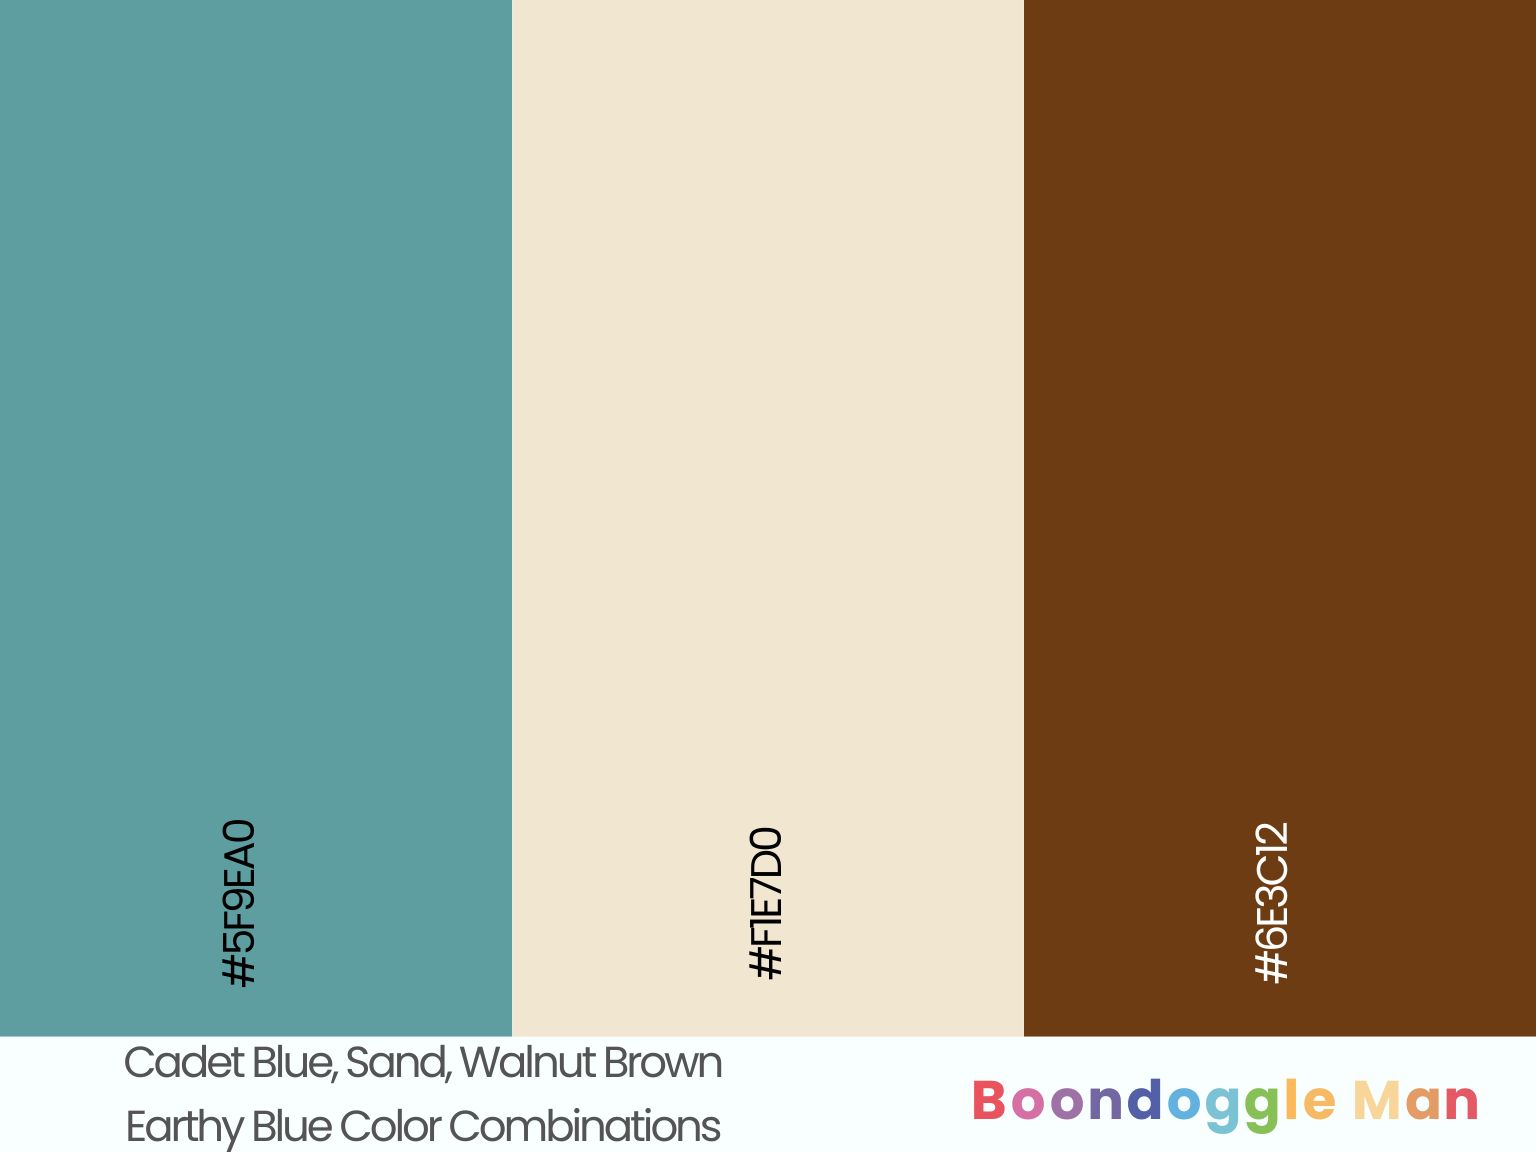 Cadet Blue, Sand, Walnut Brown